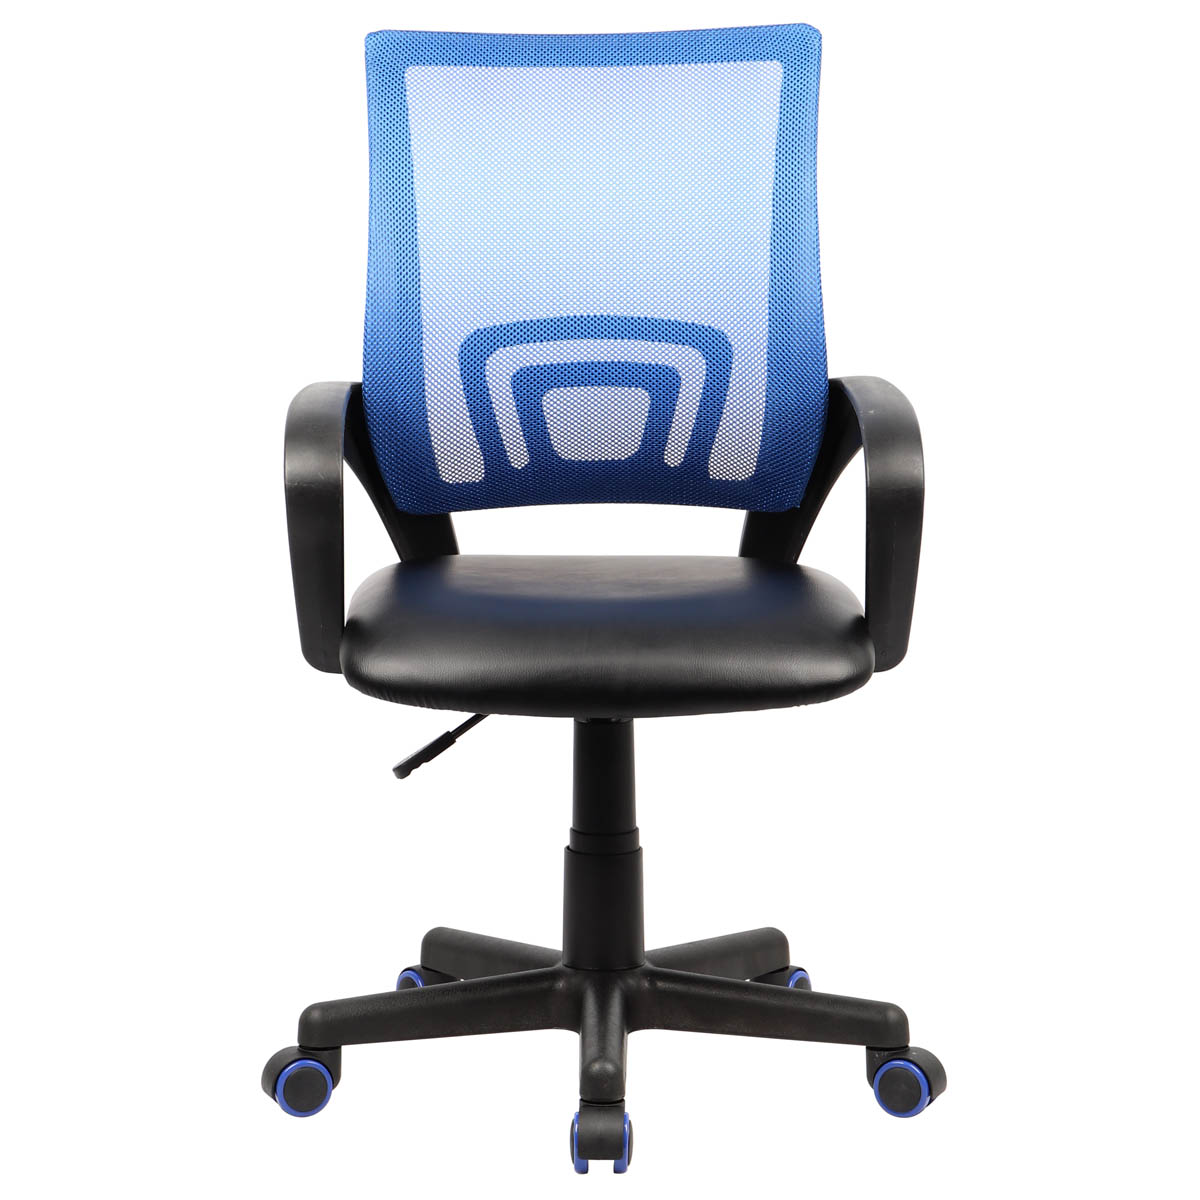 E-shop VCM Kancelářská židle Offal, černo modrá